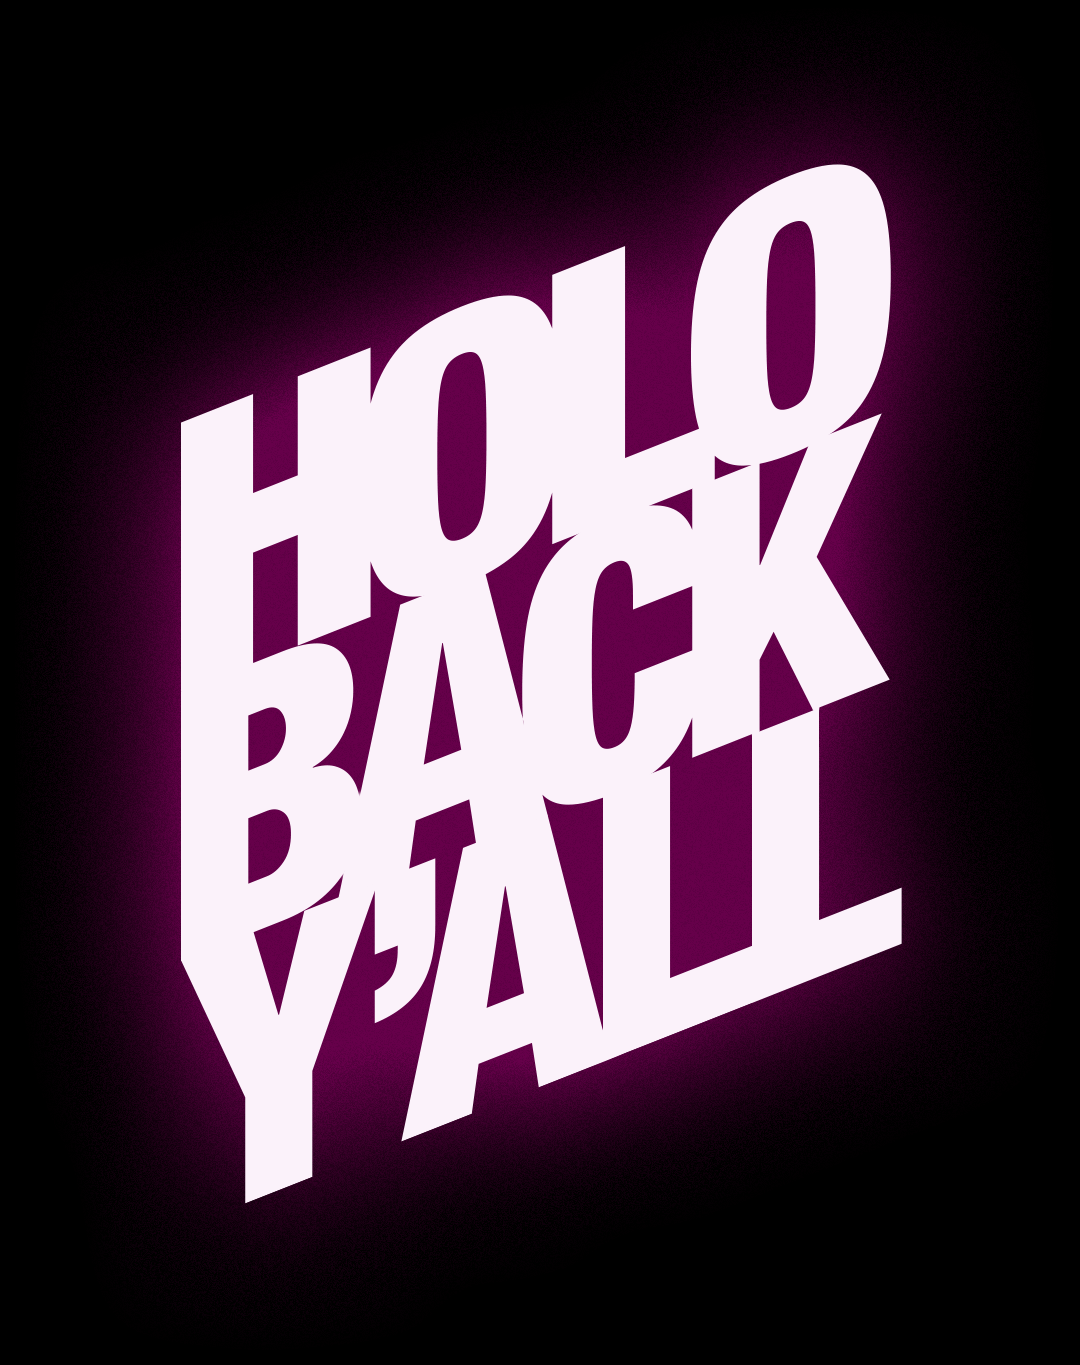 HoloBack